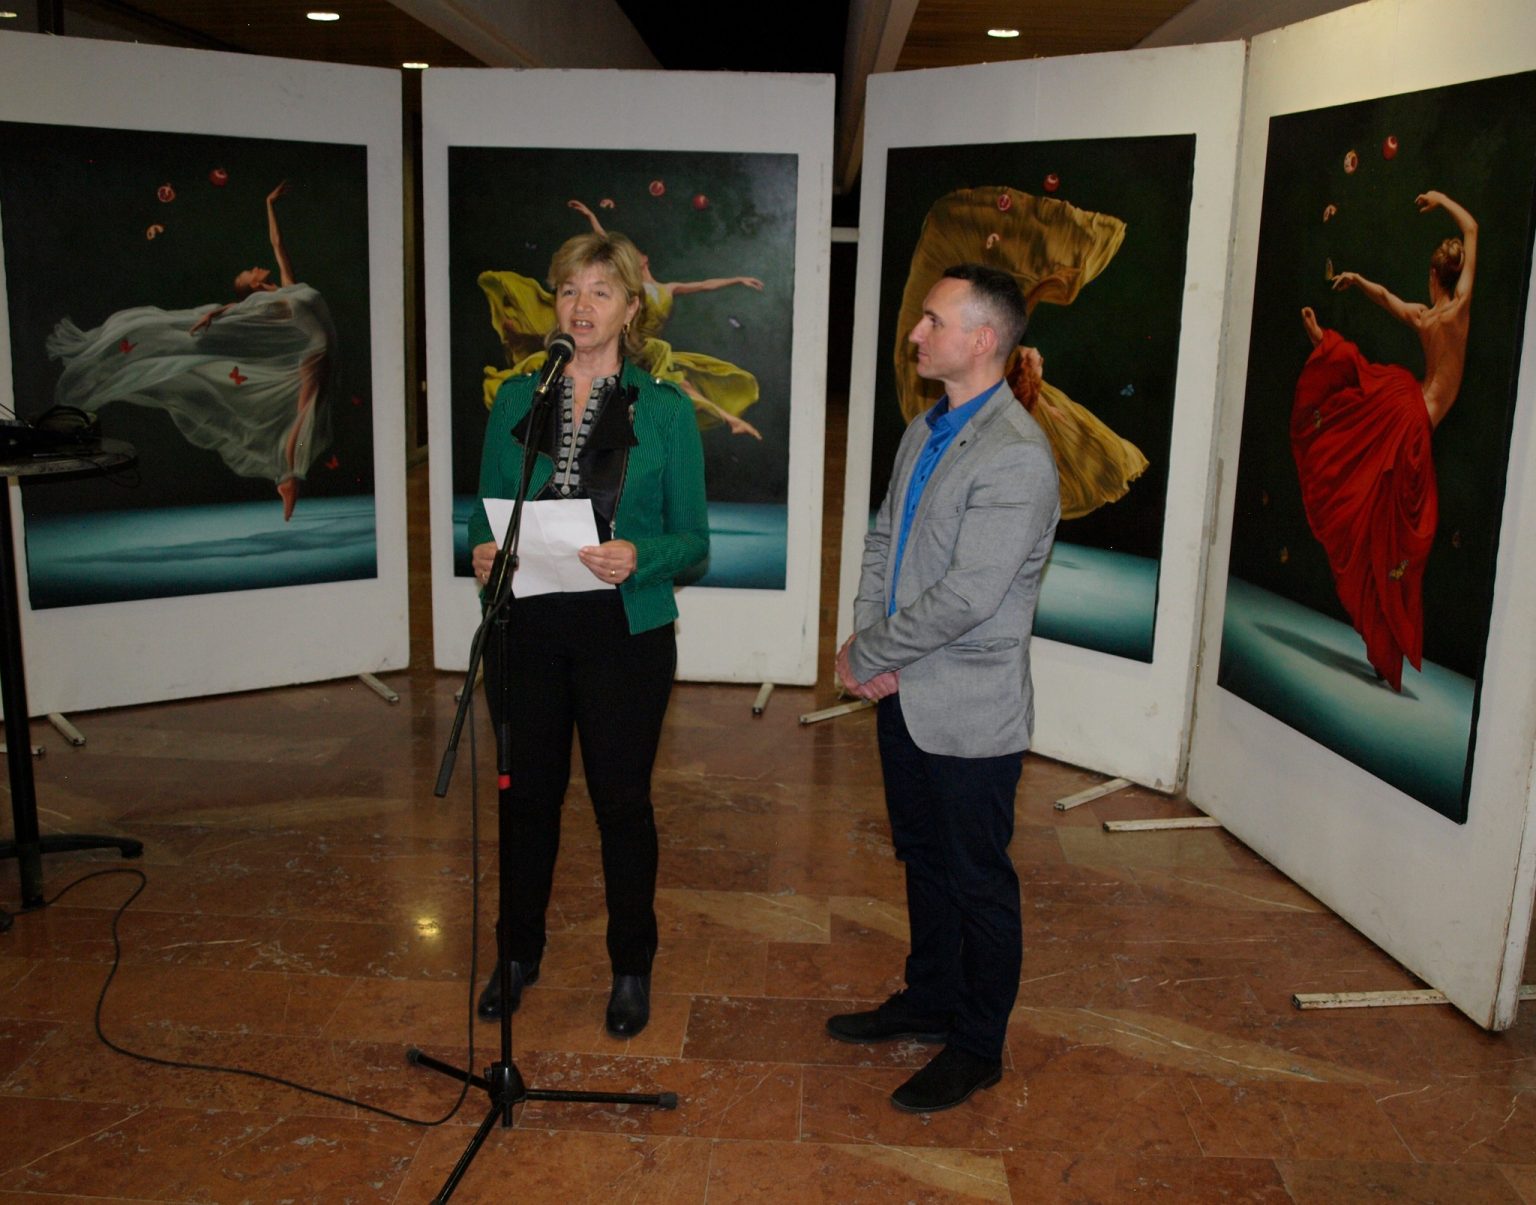 Izložba slika “Magični svet” Ivana Karafilovskog iz Crepaje otvorena u Galeriji MACUT u Novom Sadu